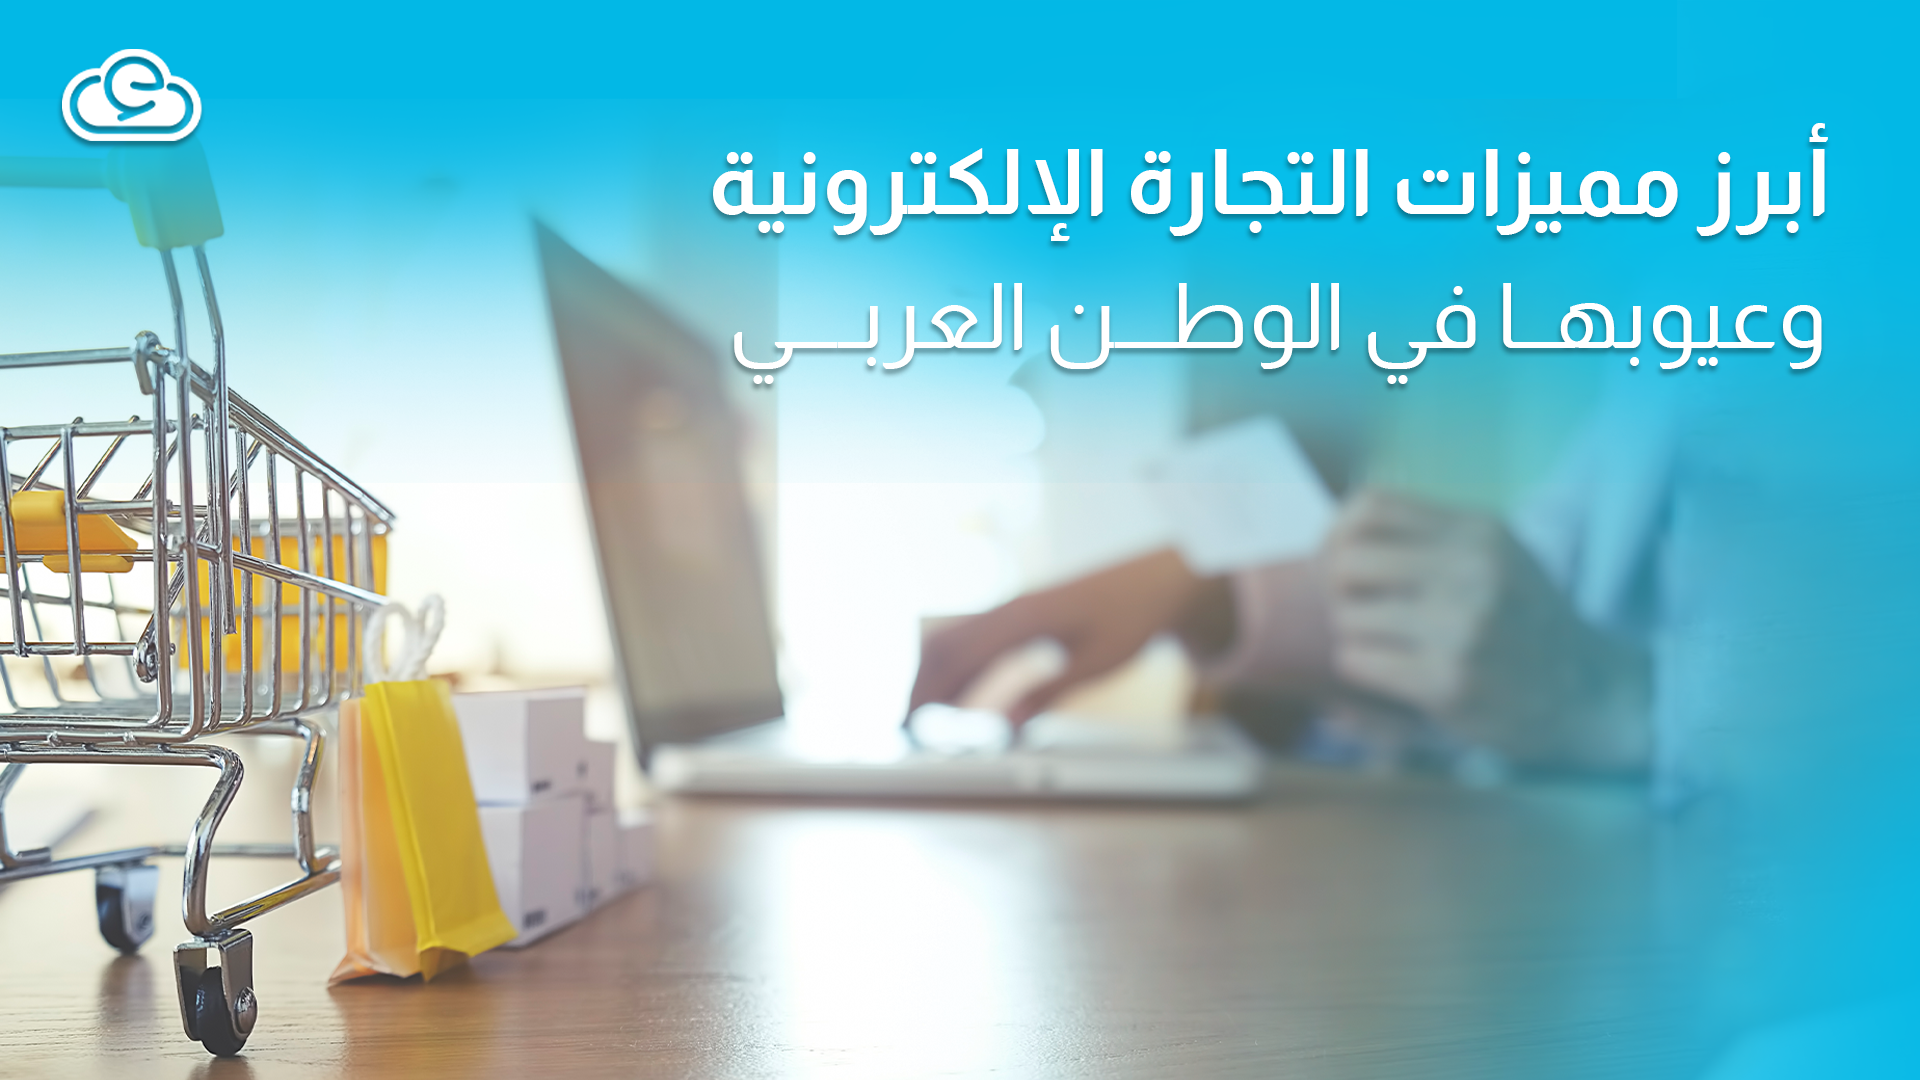 تعرف على أبرز مميزات التجارة الإلكترونية وعيوبها في الوطن العربي 2022